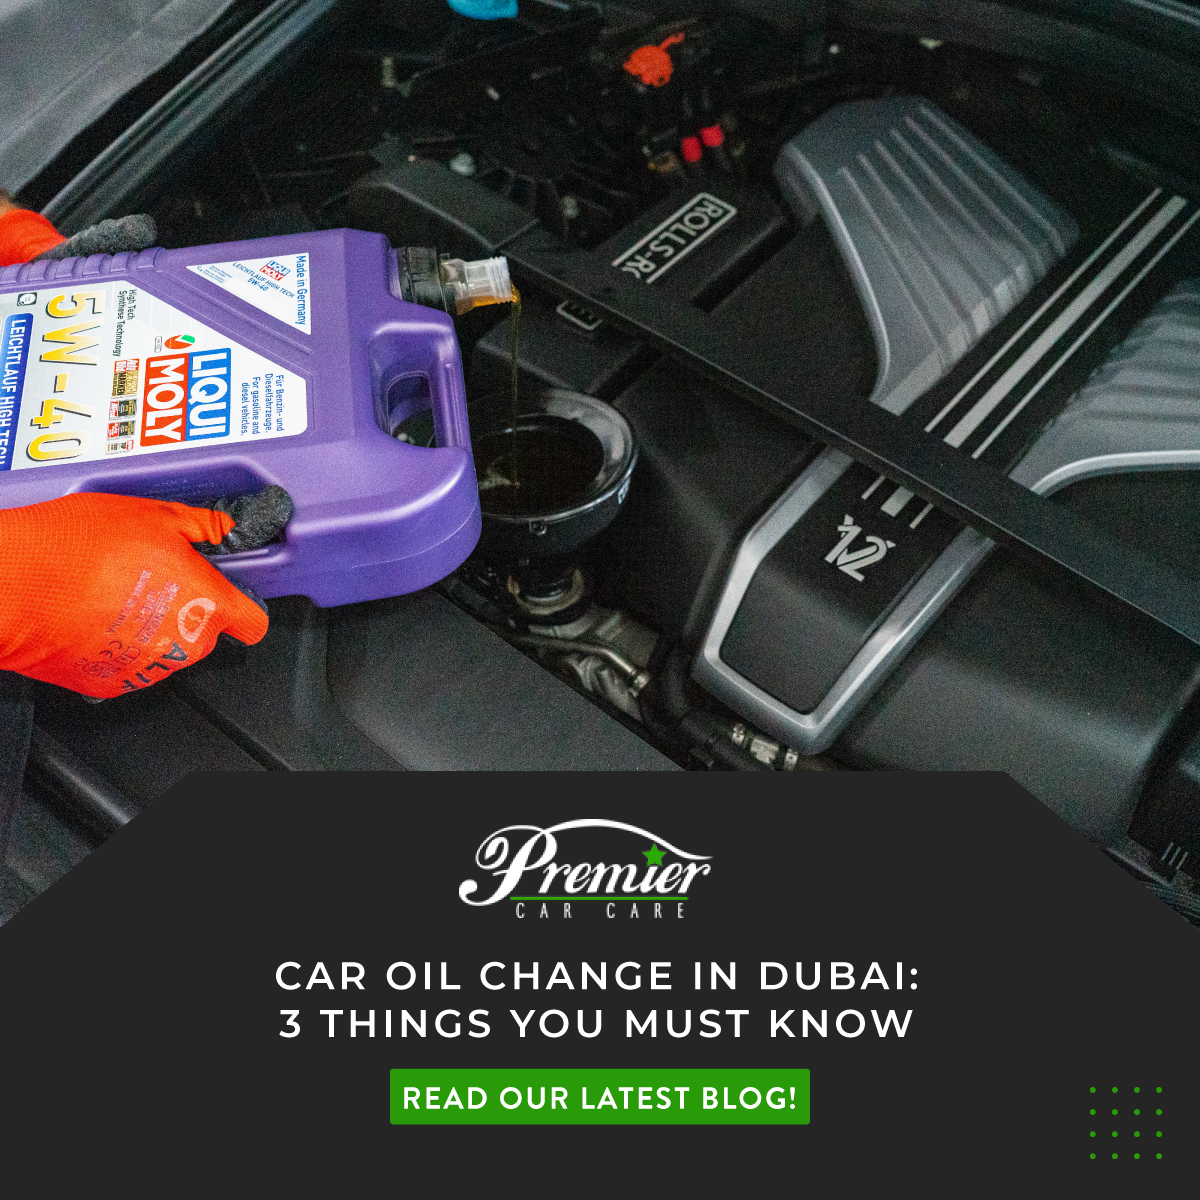 Car oil change in UAE